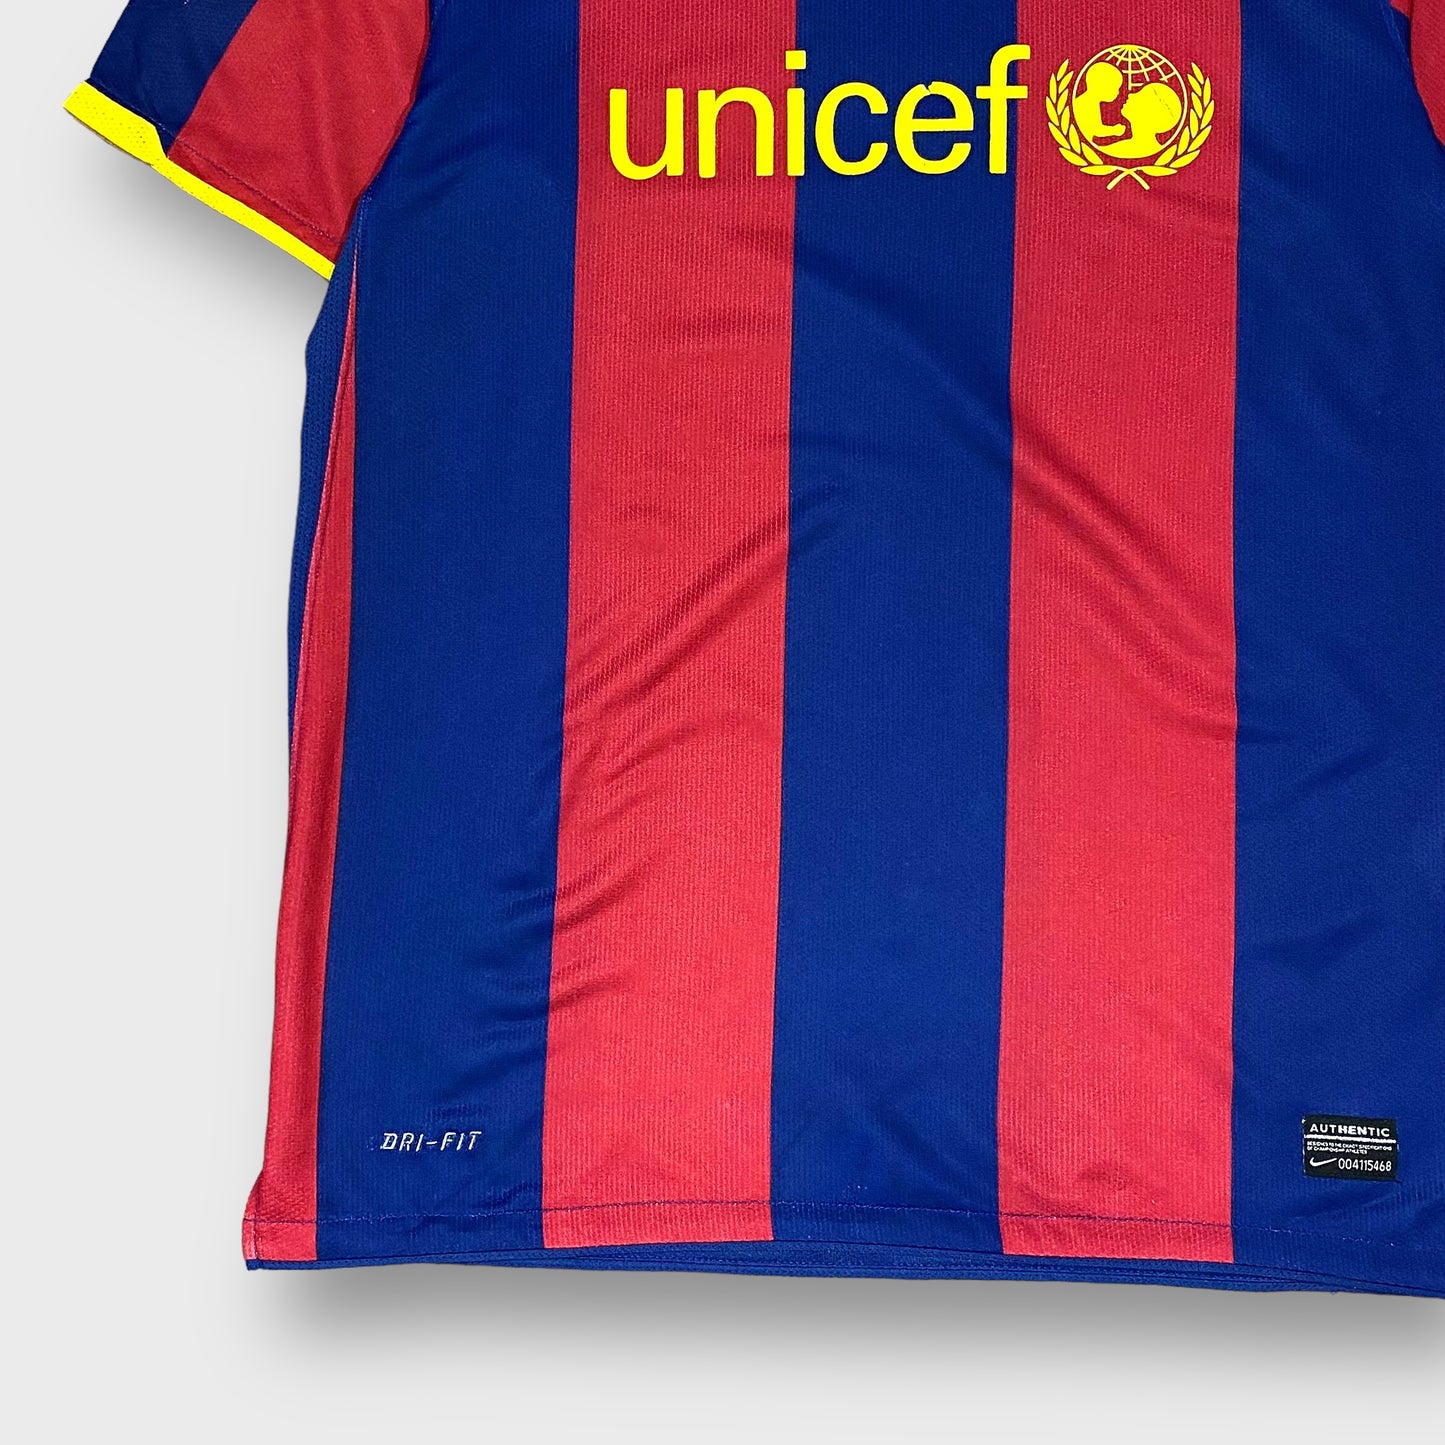 00's "Fc Barceleona" Soccer shirt